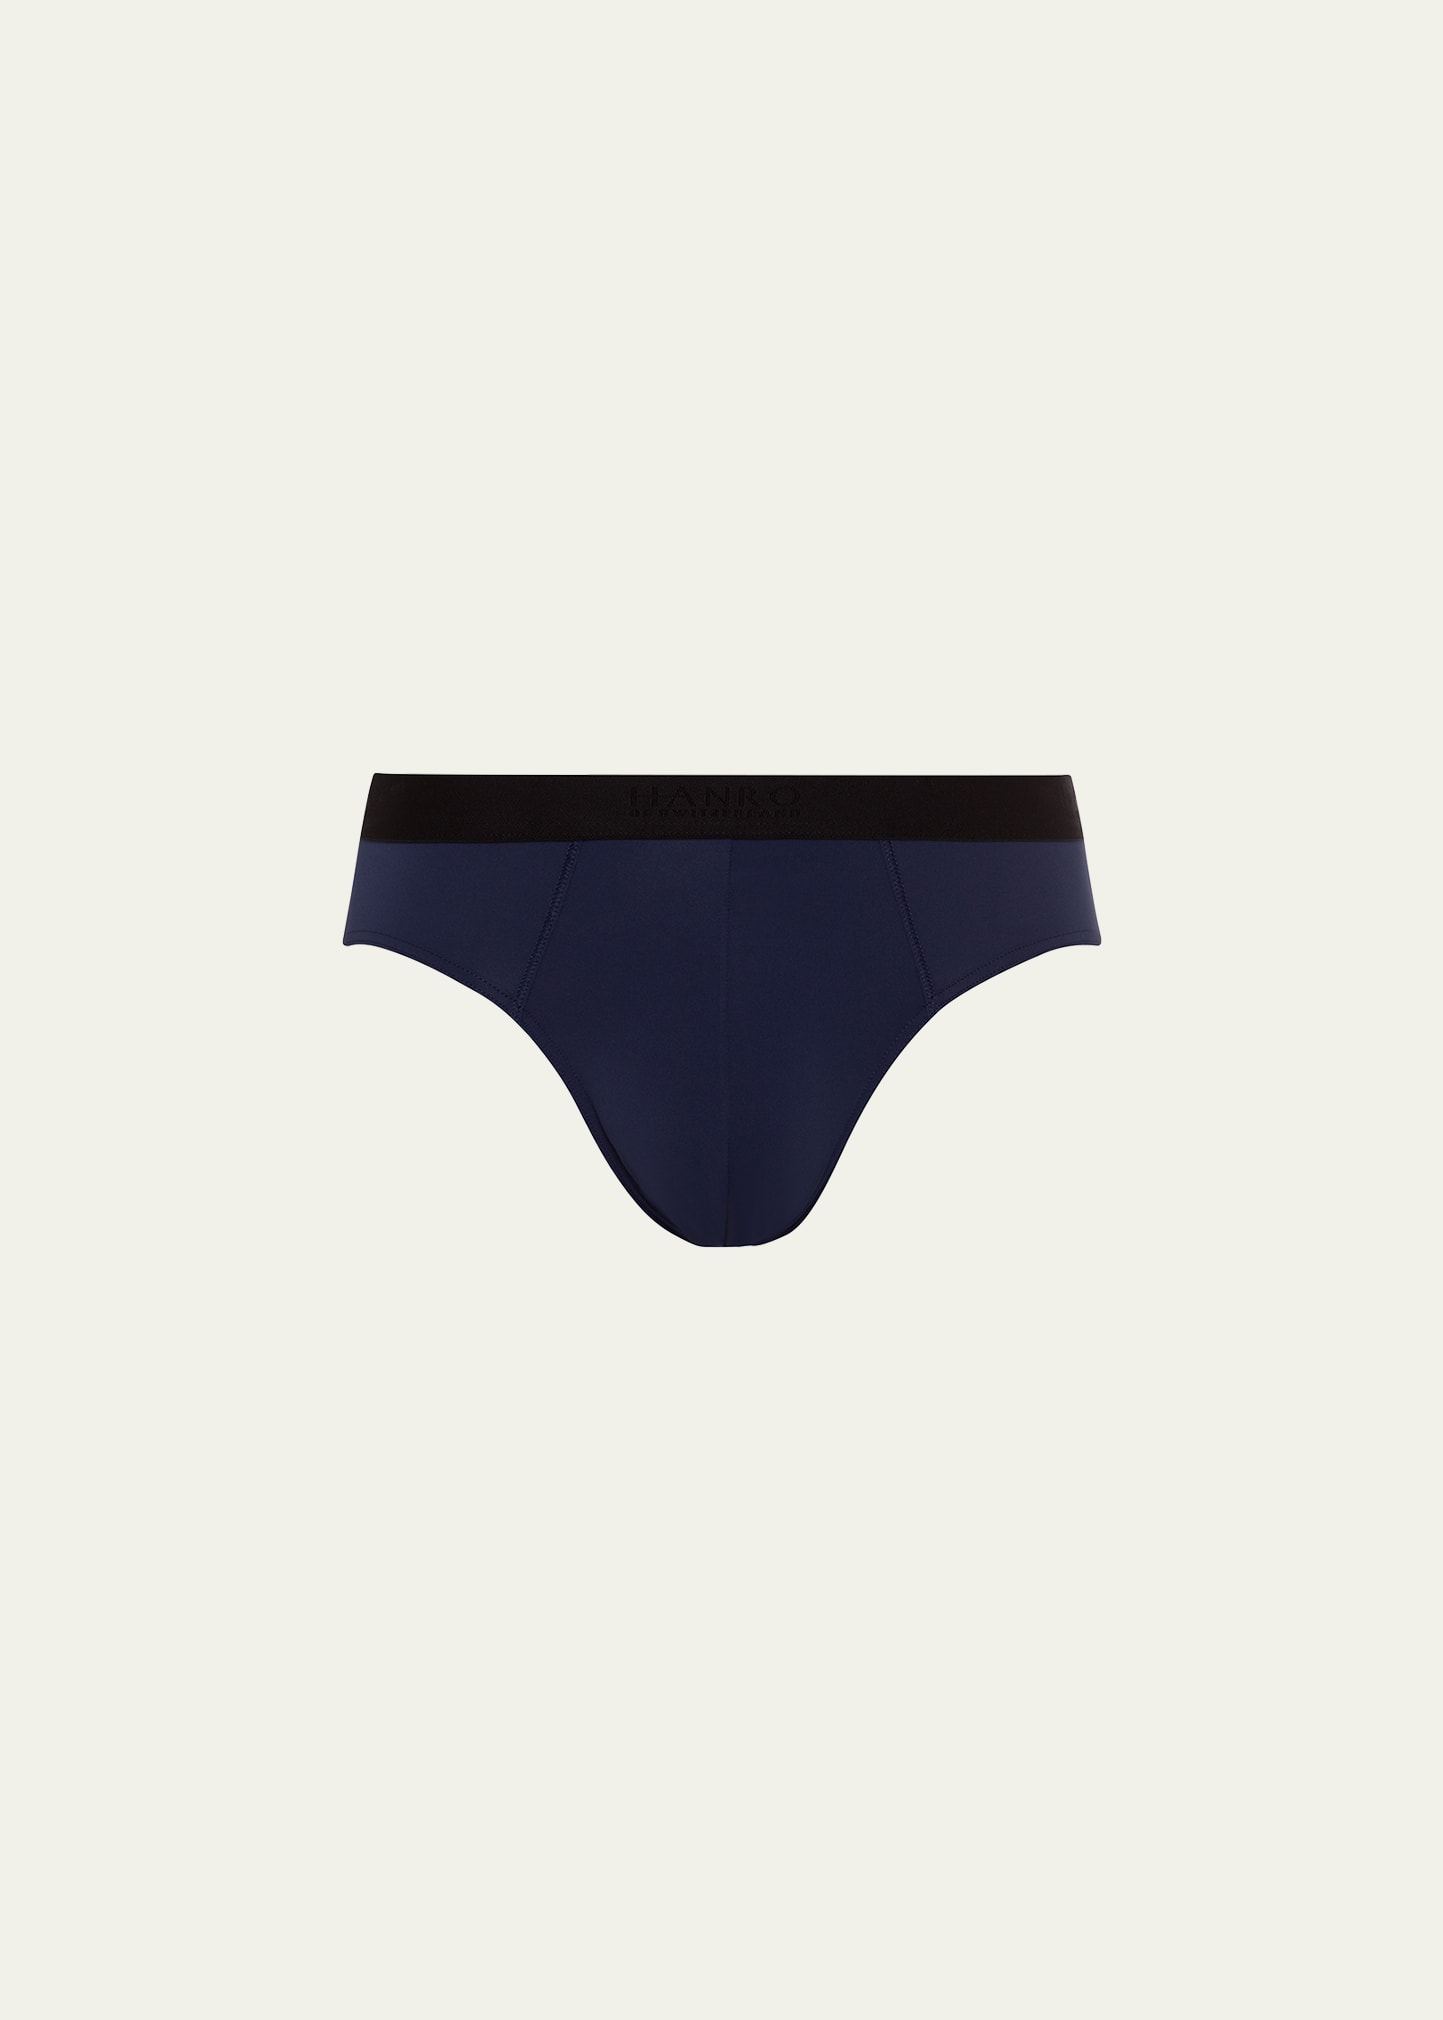 Premium Men's Underwear by HANRO